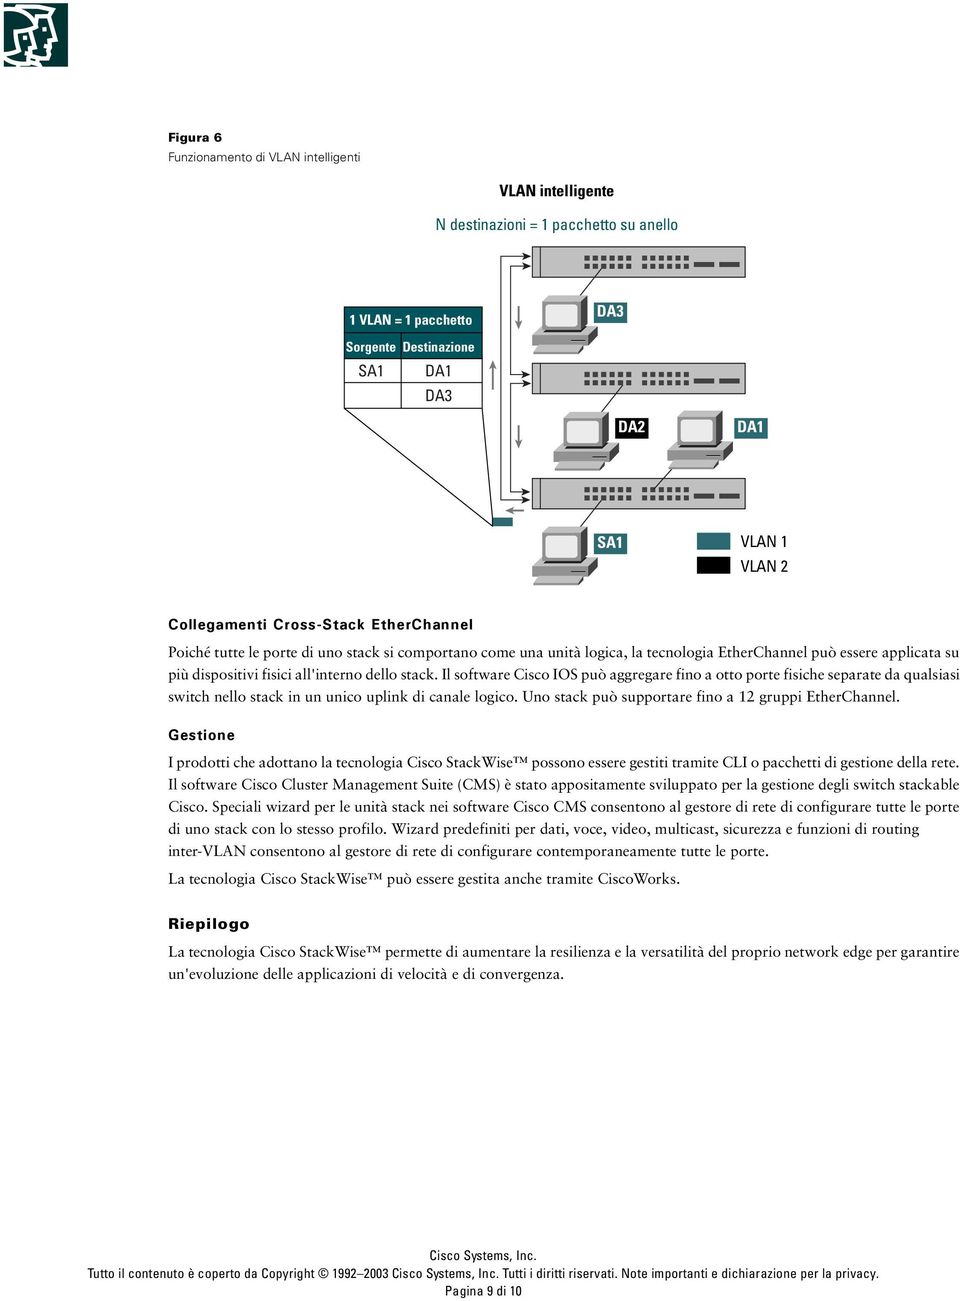 Il software Cisco IOS può aggregare fino a otto porte fisiche separate da qualsiasi switch nello stack in un unico uplink di canale logico. Uno stack può supportare fino a 12 gruppi EtherChannel.